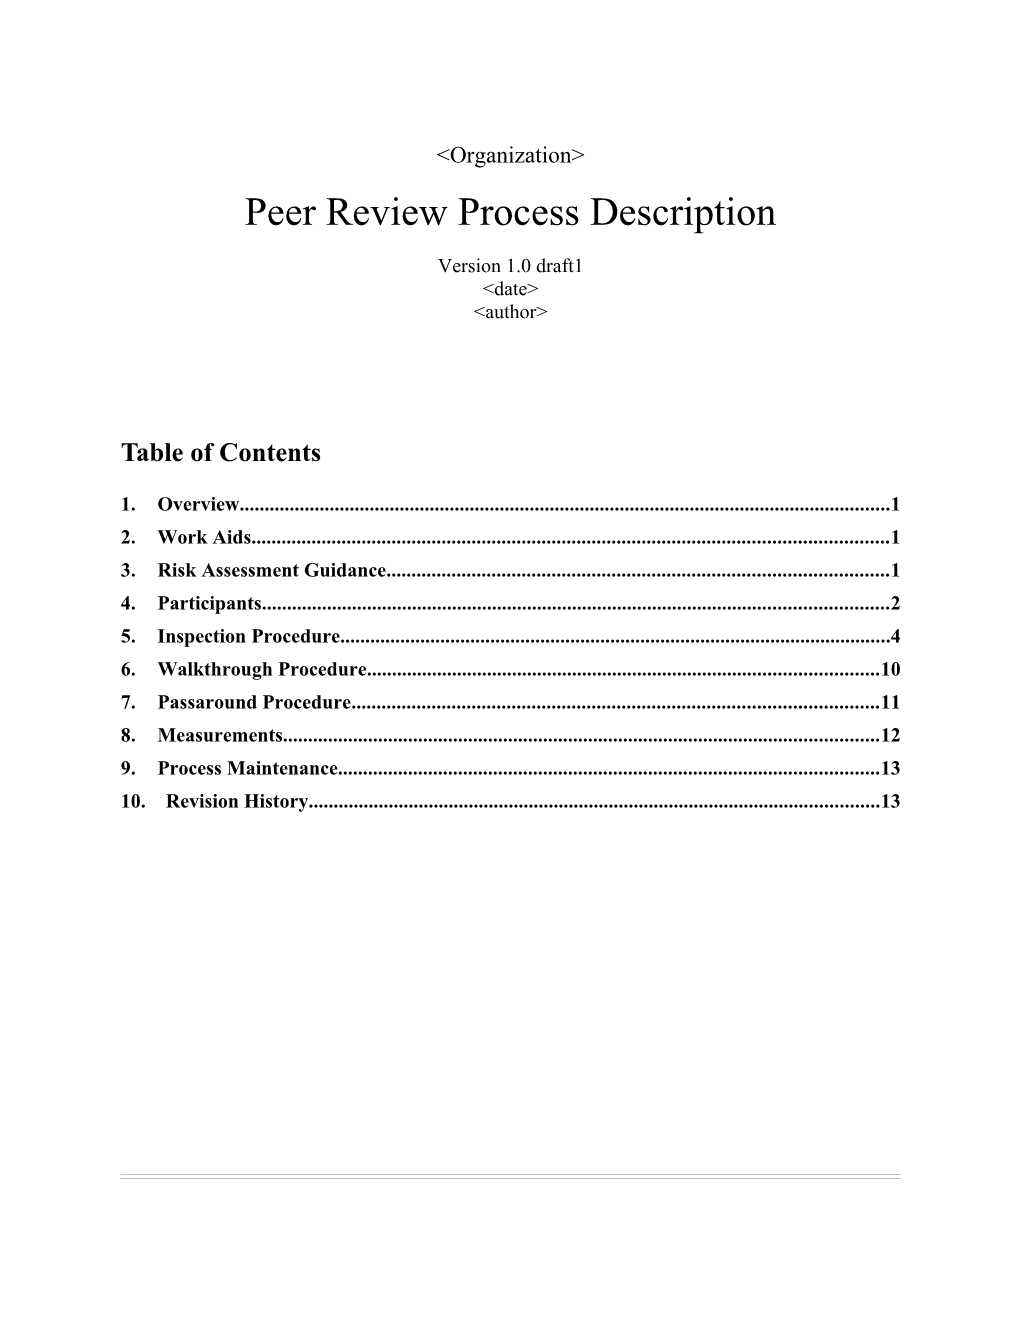 Sample Peer Review Process